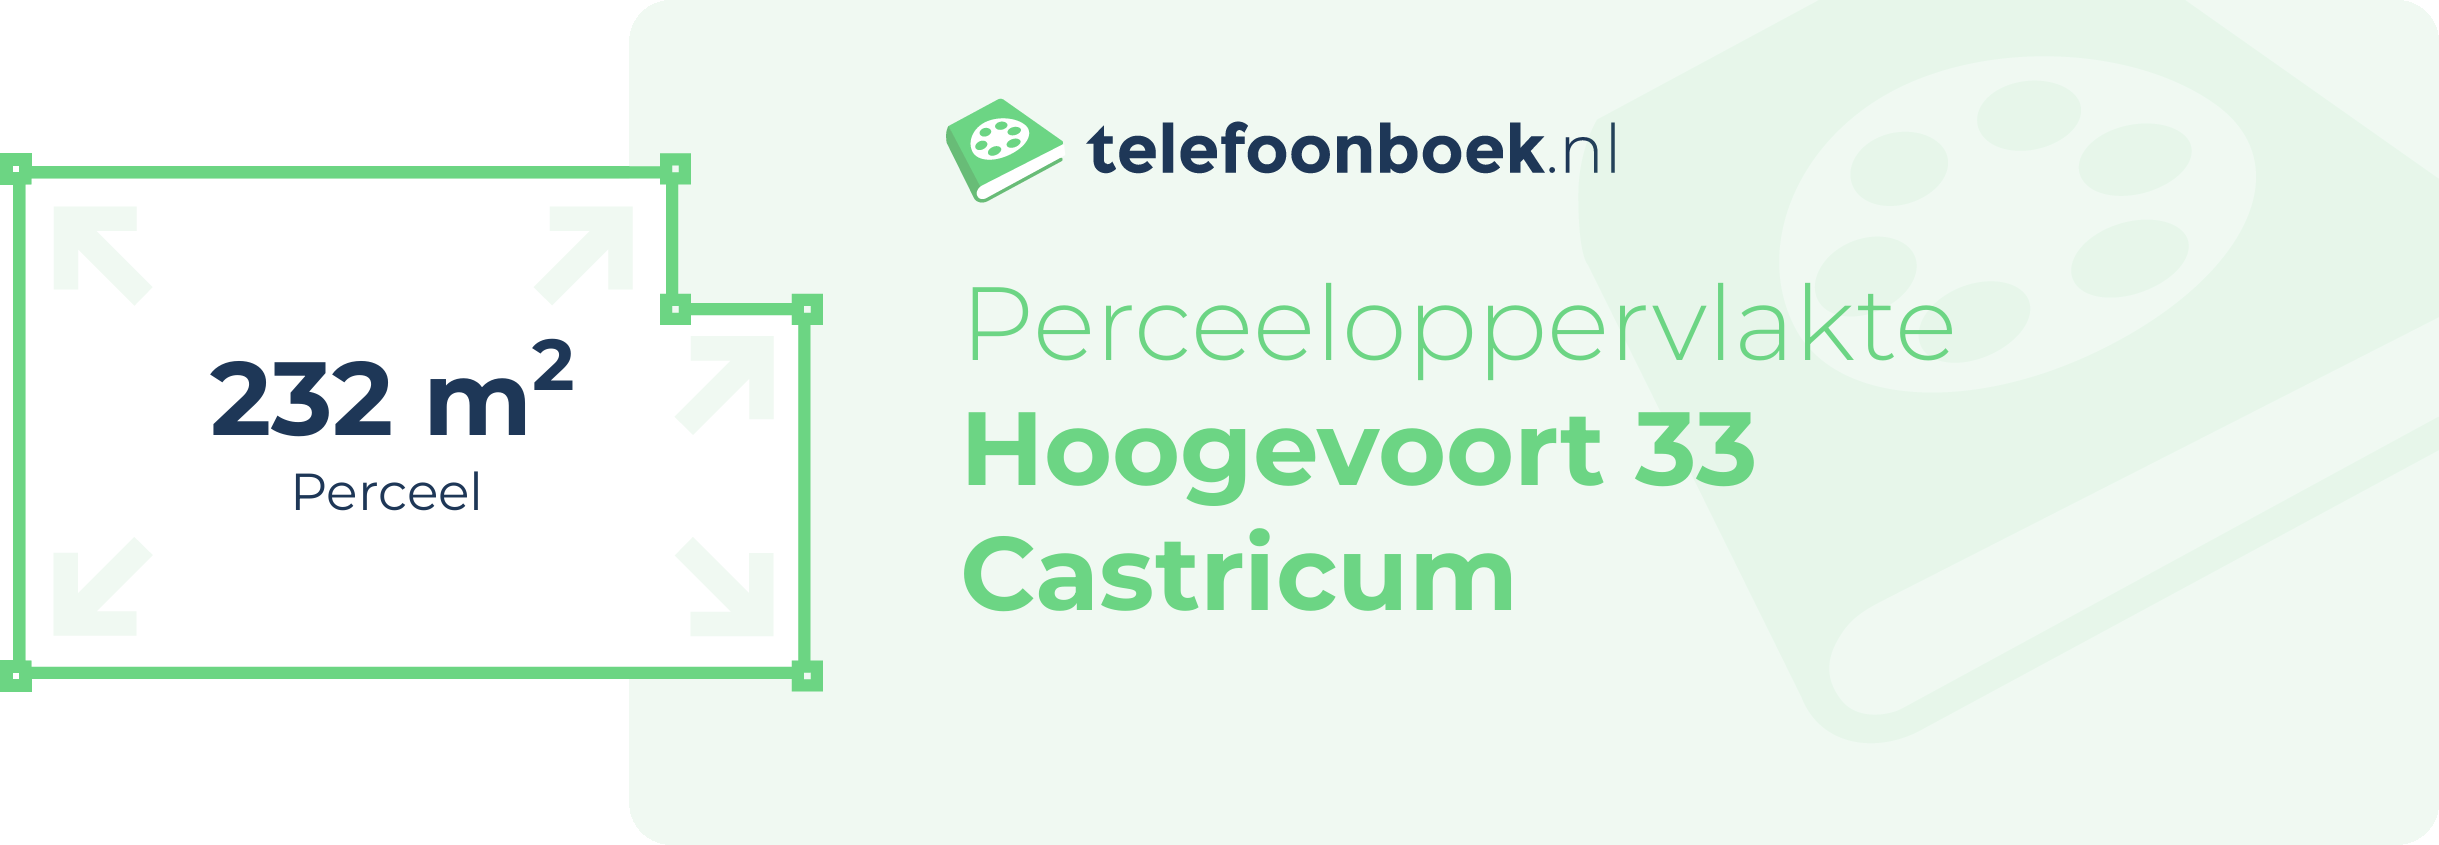 Perceeloppervlakte Hoogevoort 33 Castricum